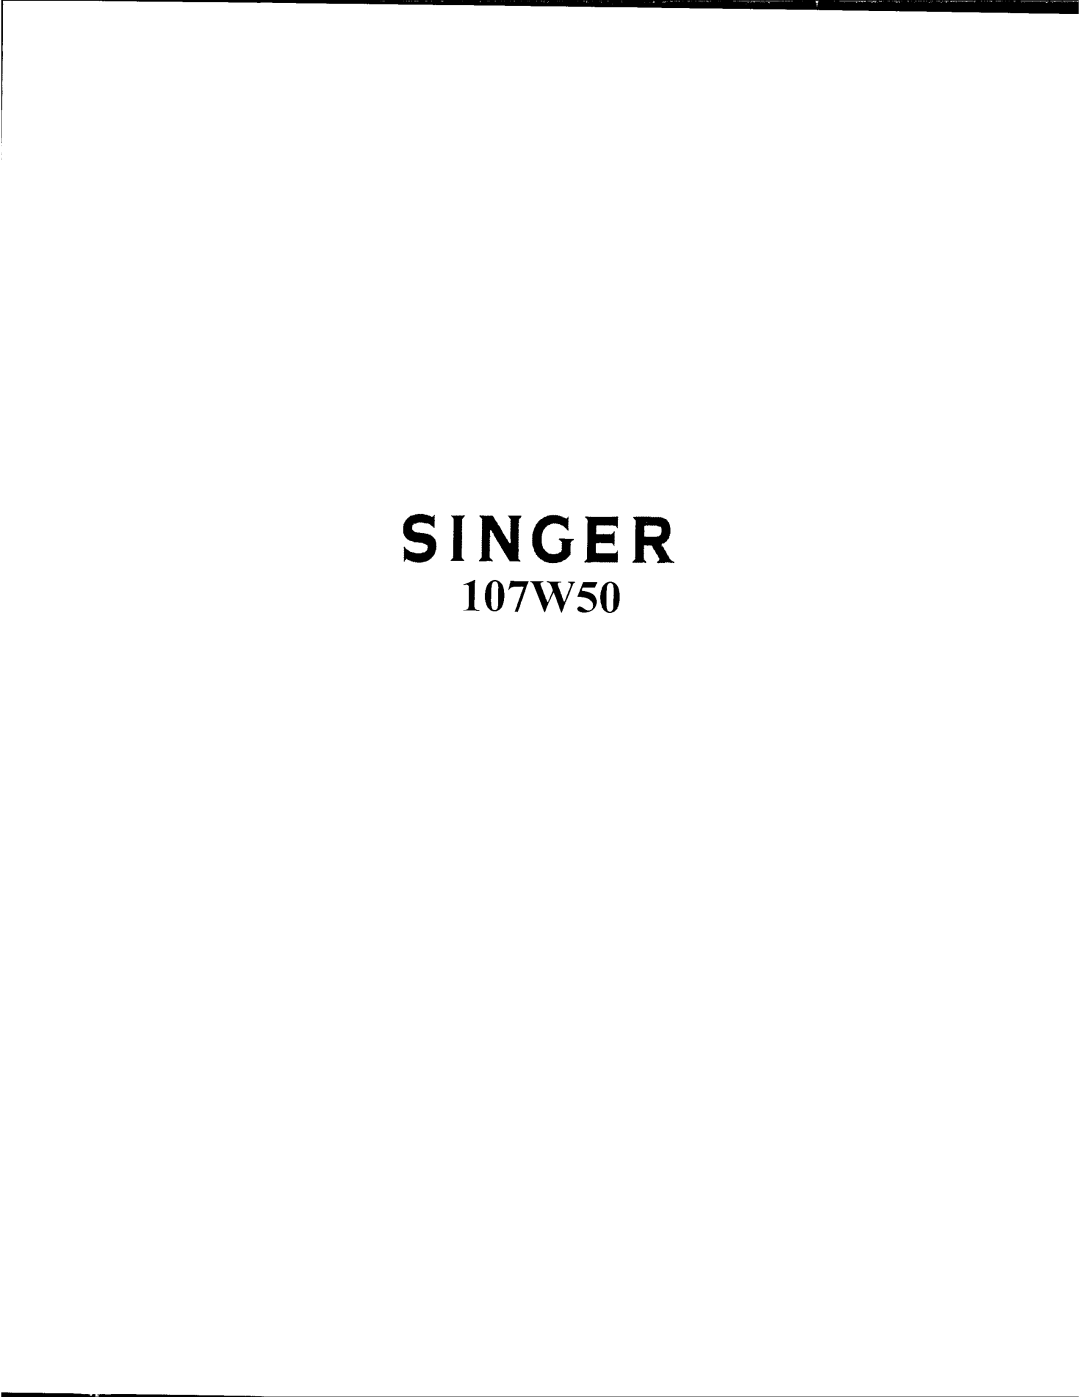 Singer 107W50 manual 